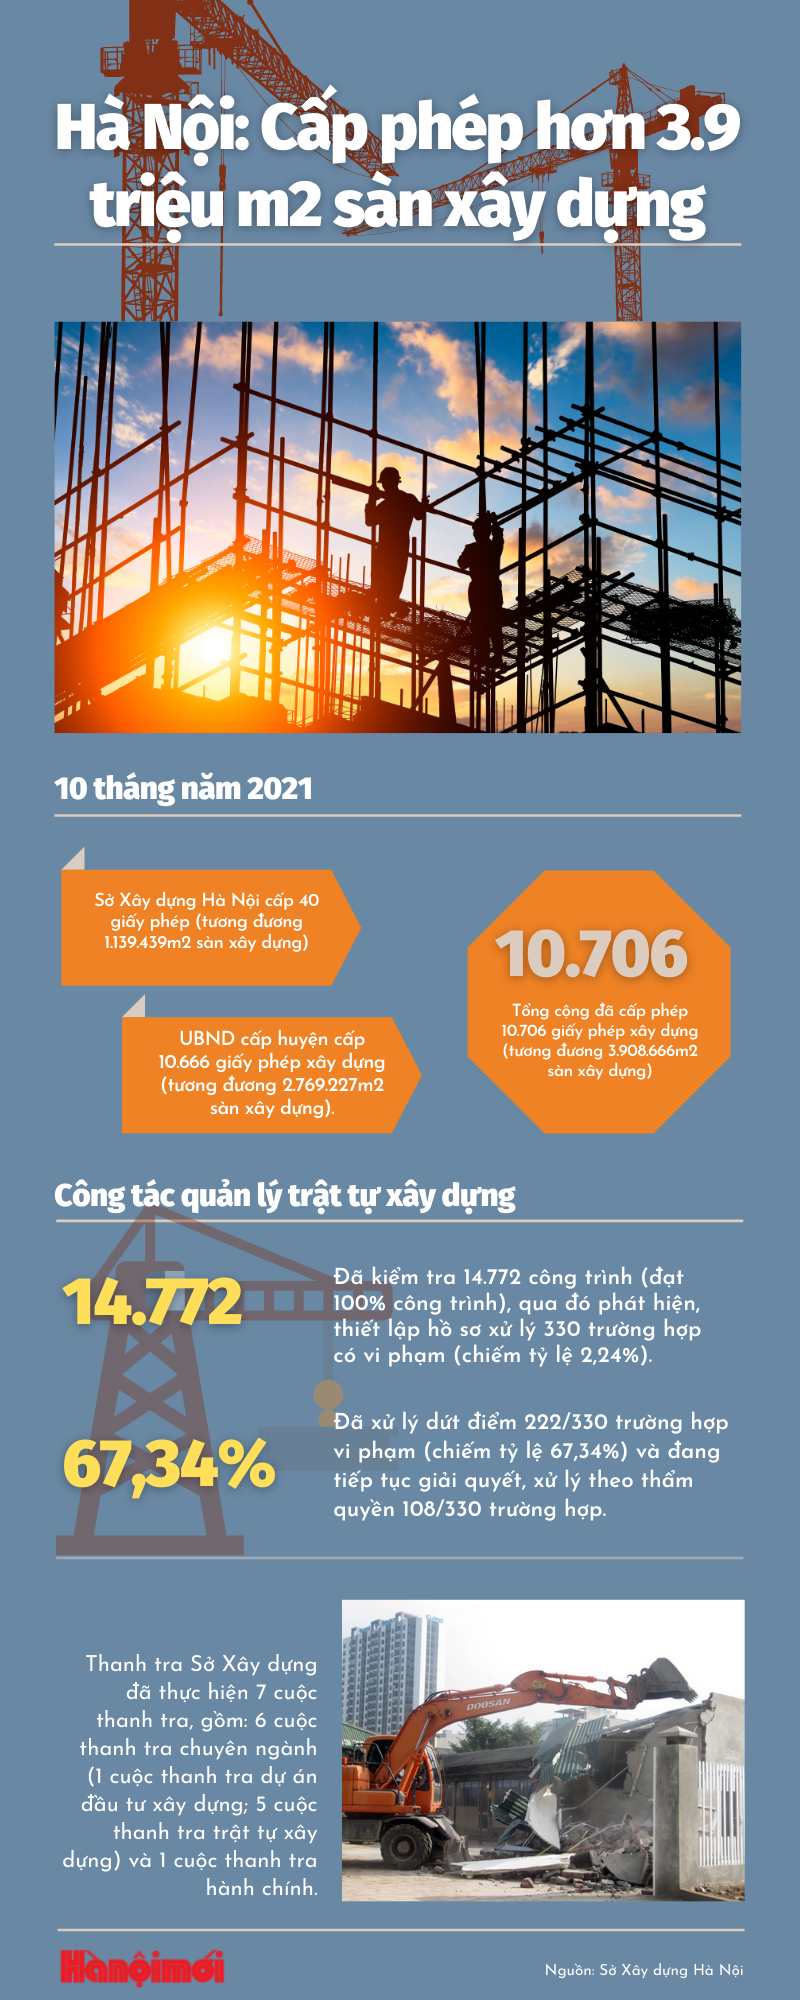 Hà Nội: Cấp phép hơn 3,9 triệu mét vuông sàn xây dựng trong 10 tháng năm 2021 - Ảnh 1